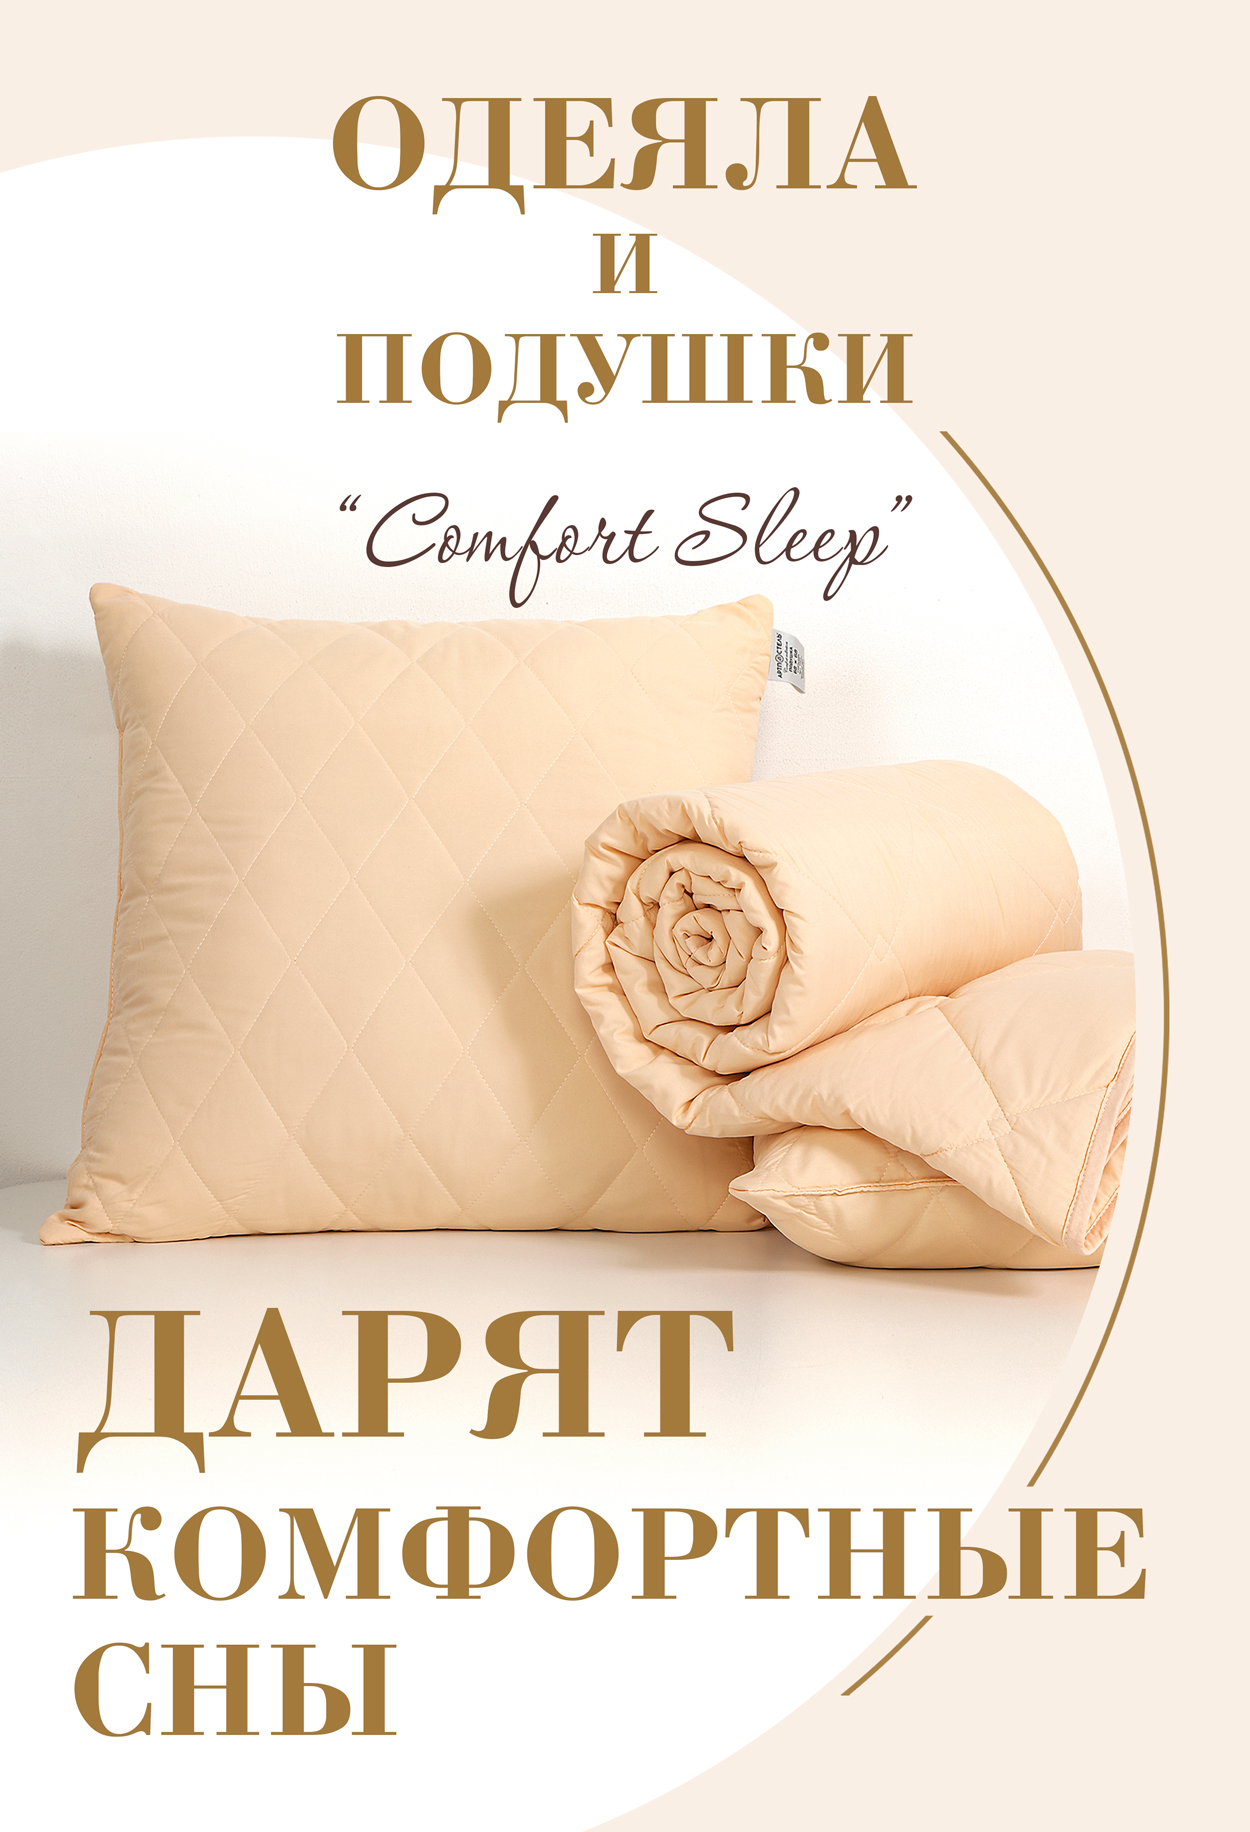 Одеяла и подушки 